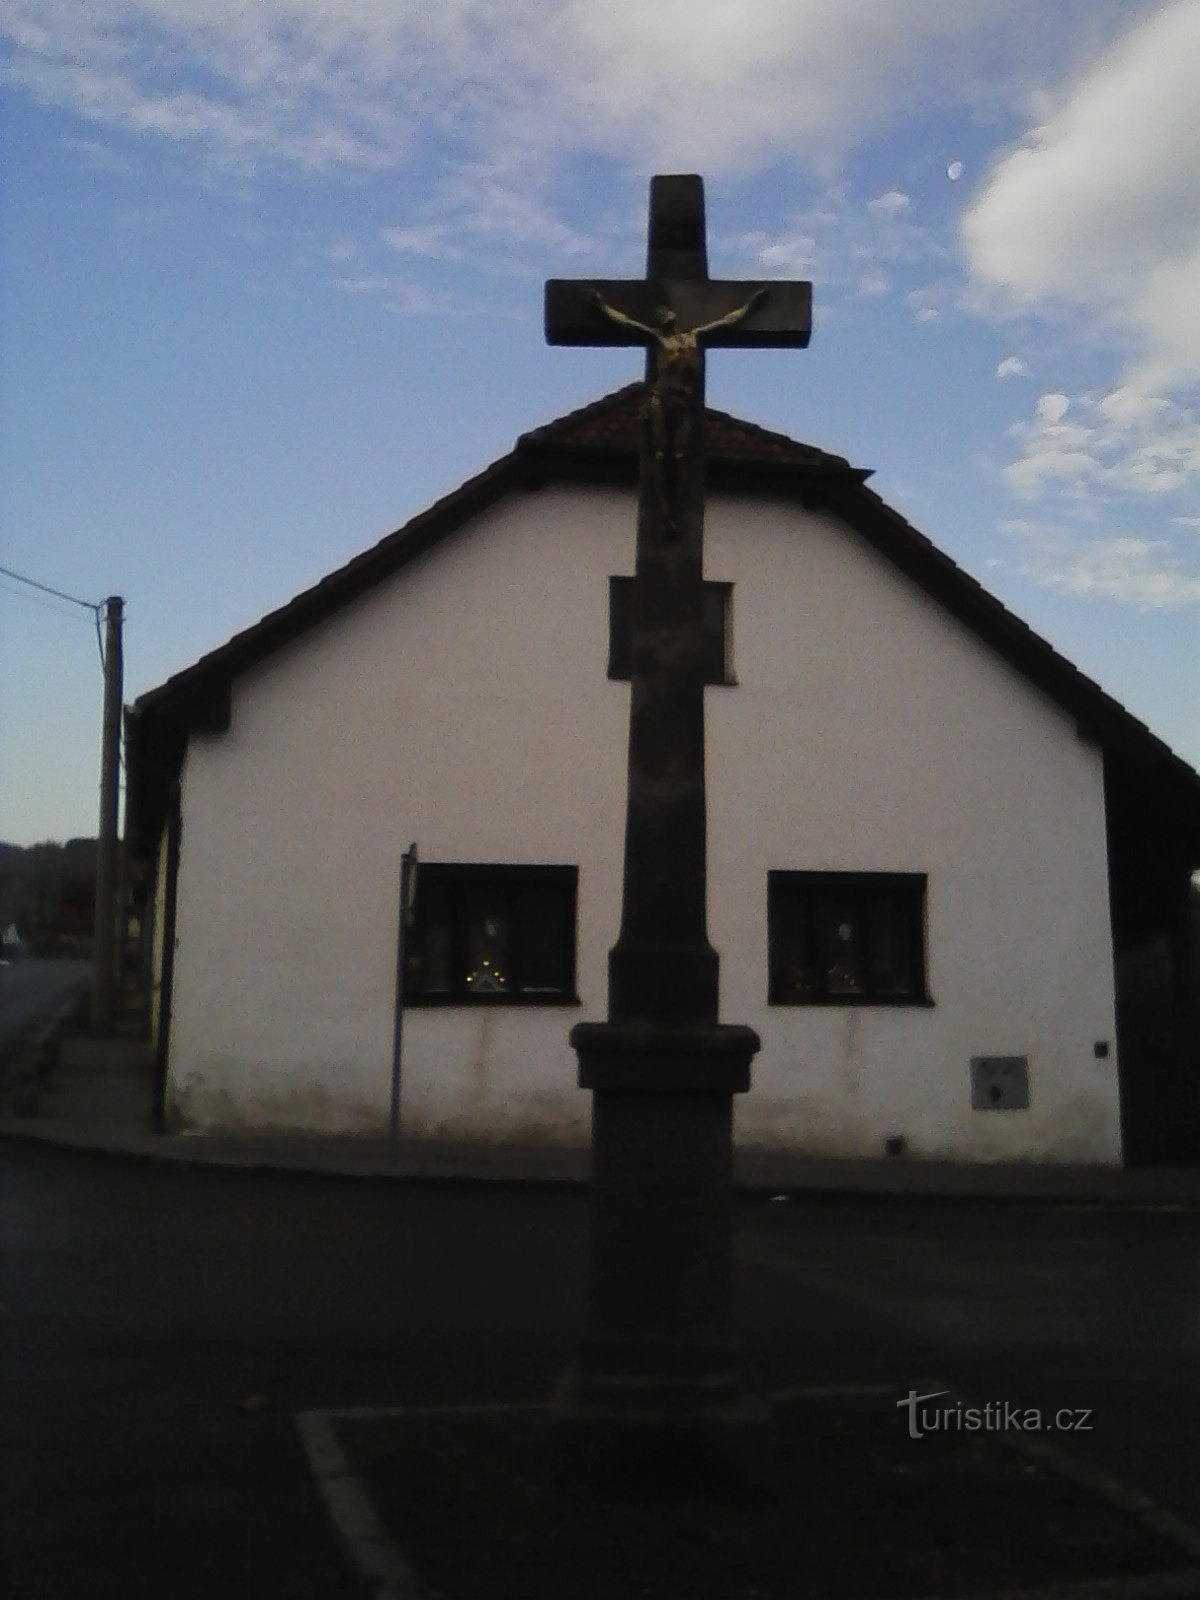 1. Kreuz am Ende des Sattels.